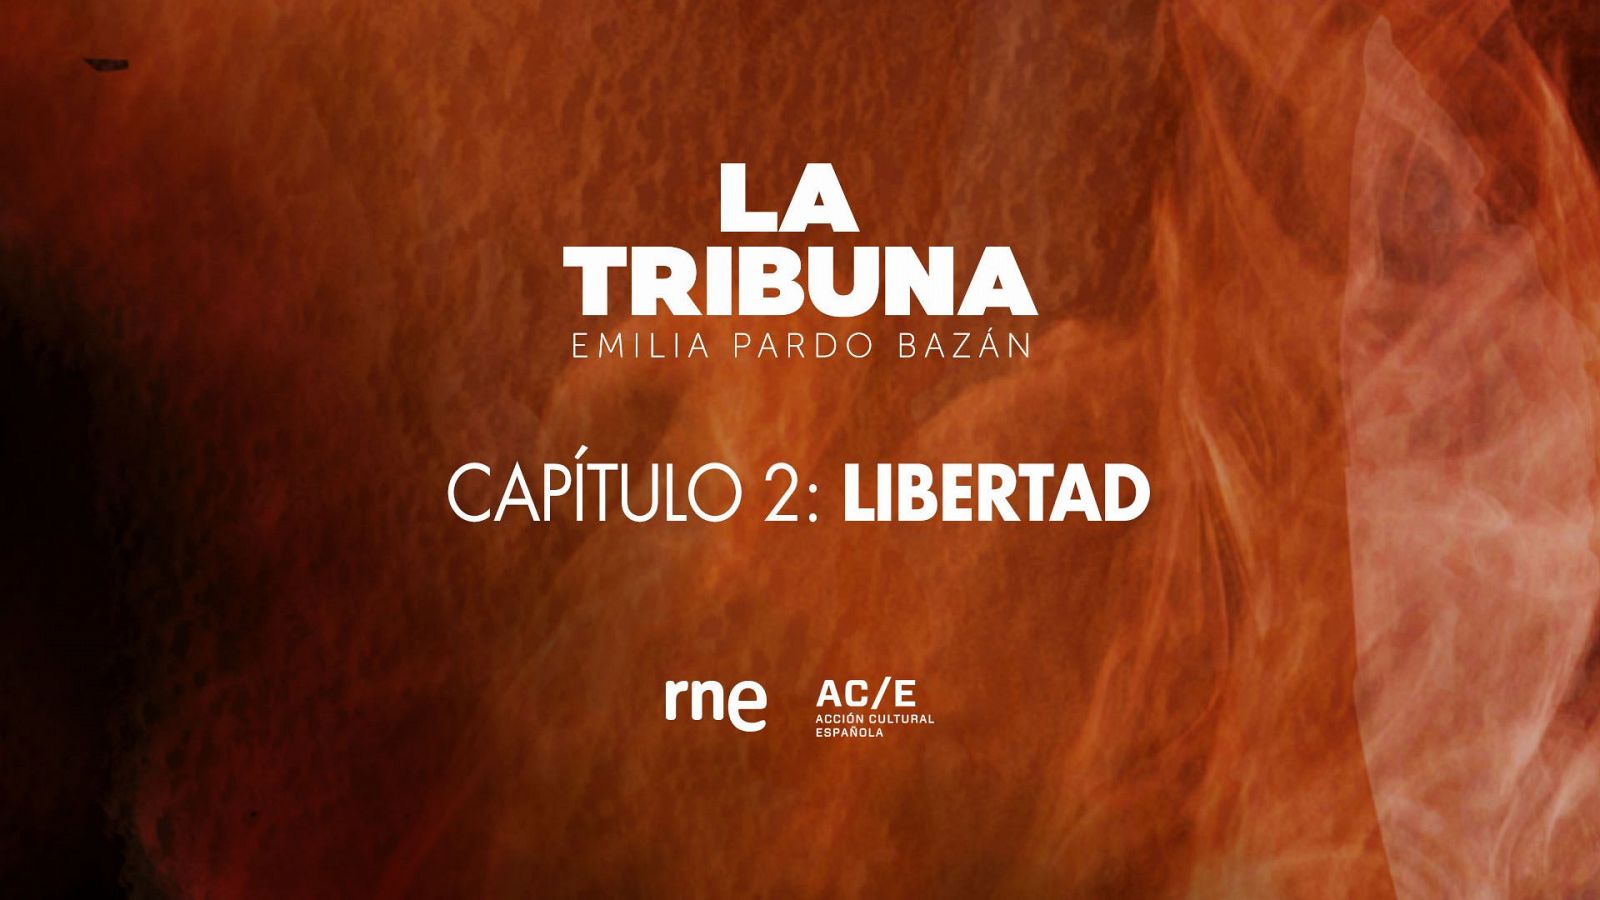 'La Tribuna', captulo 2: Libertad